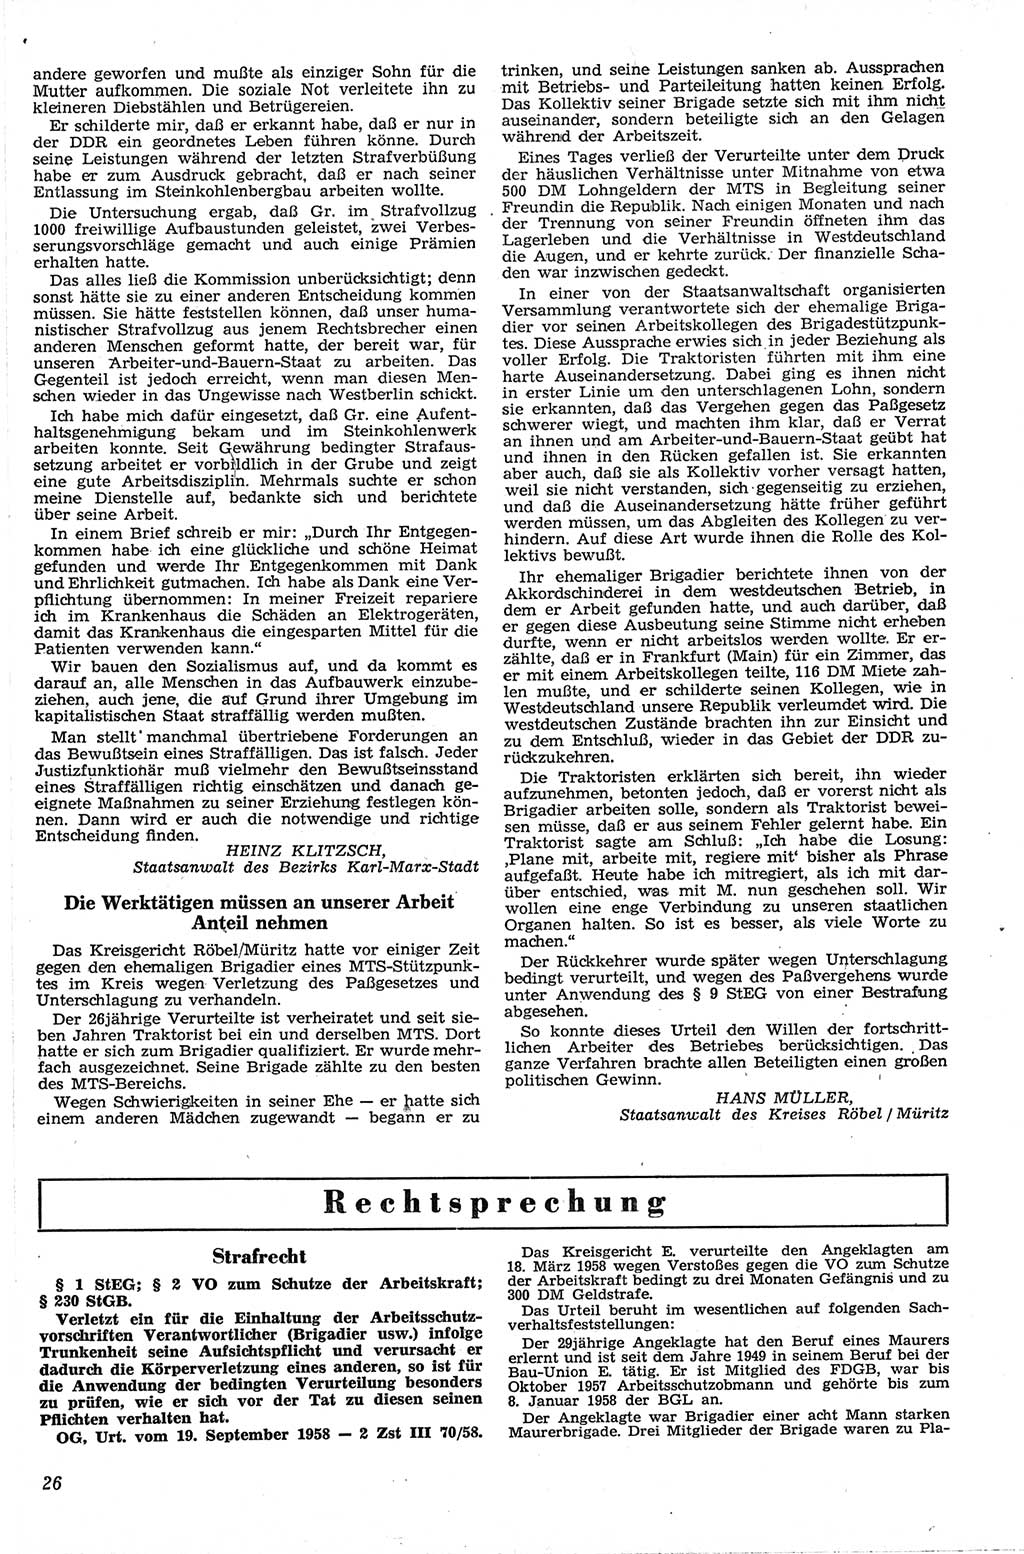 Neue Justiz (NJ), Zeitschrift für Recht und Rechtswissenschaft [Deutsche Demokratische Republik (DDR)], 13. Jahrgang 1959, Seite 26 (NJ DDR 1959, S. 26)